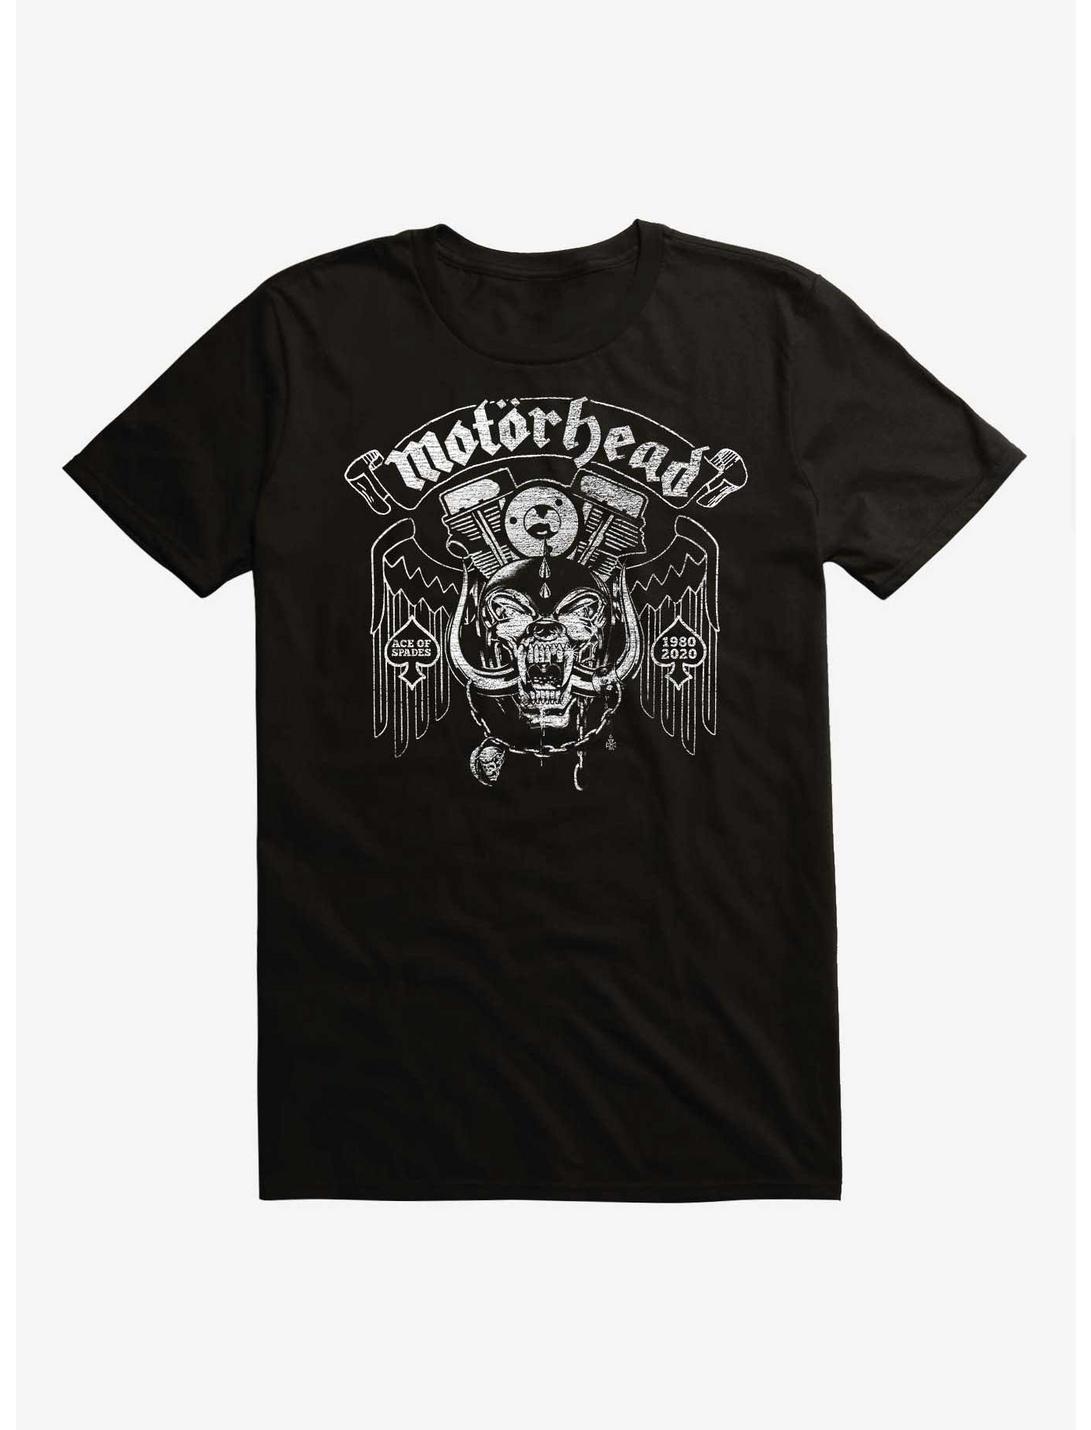 Plus Size Motorhead Ace Of Spades Est. 1980 T-Shirt, BLACK, hi-res